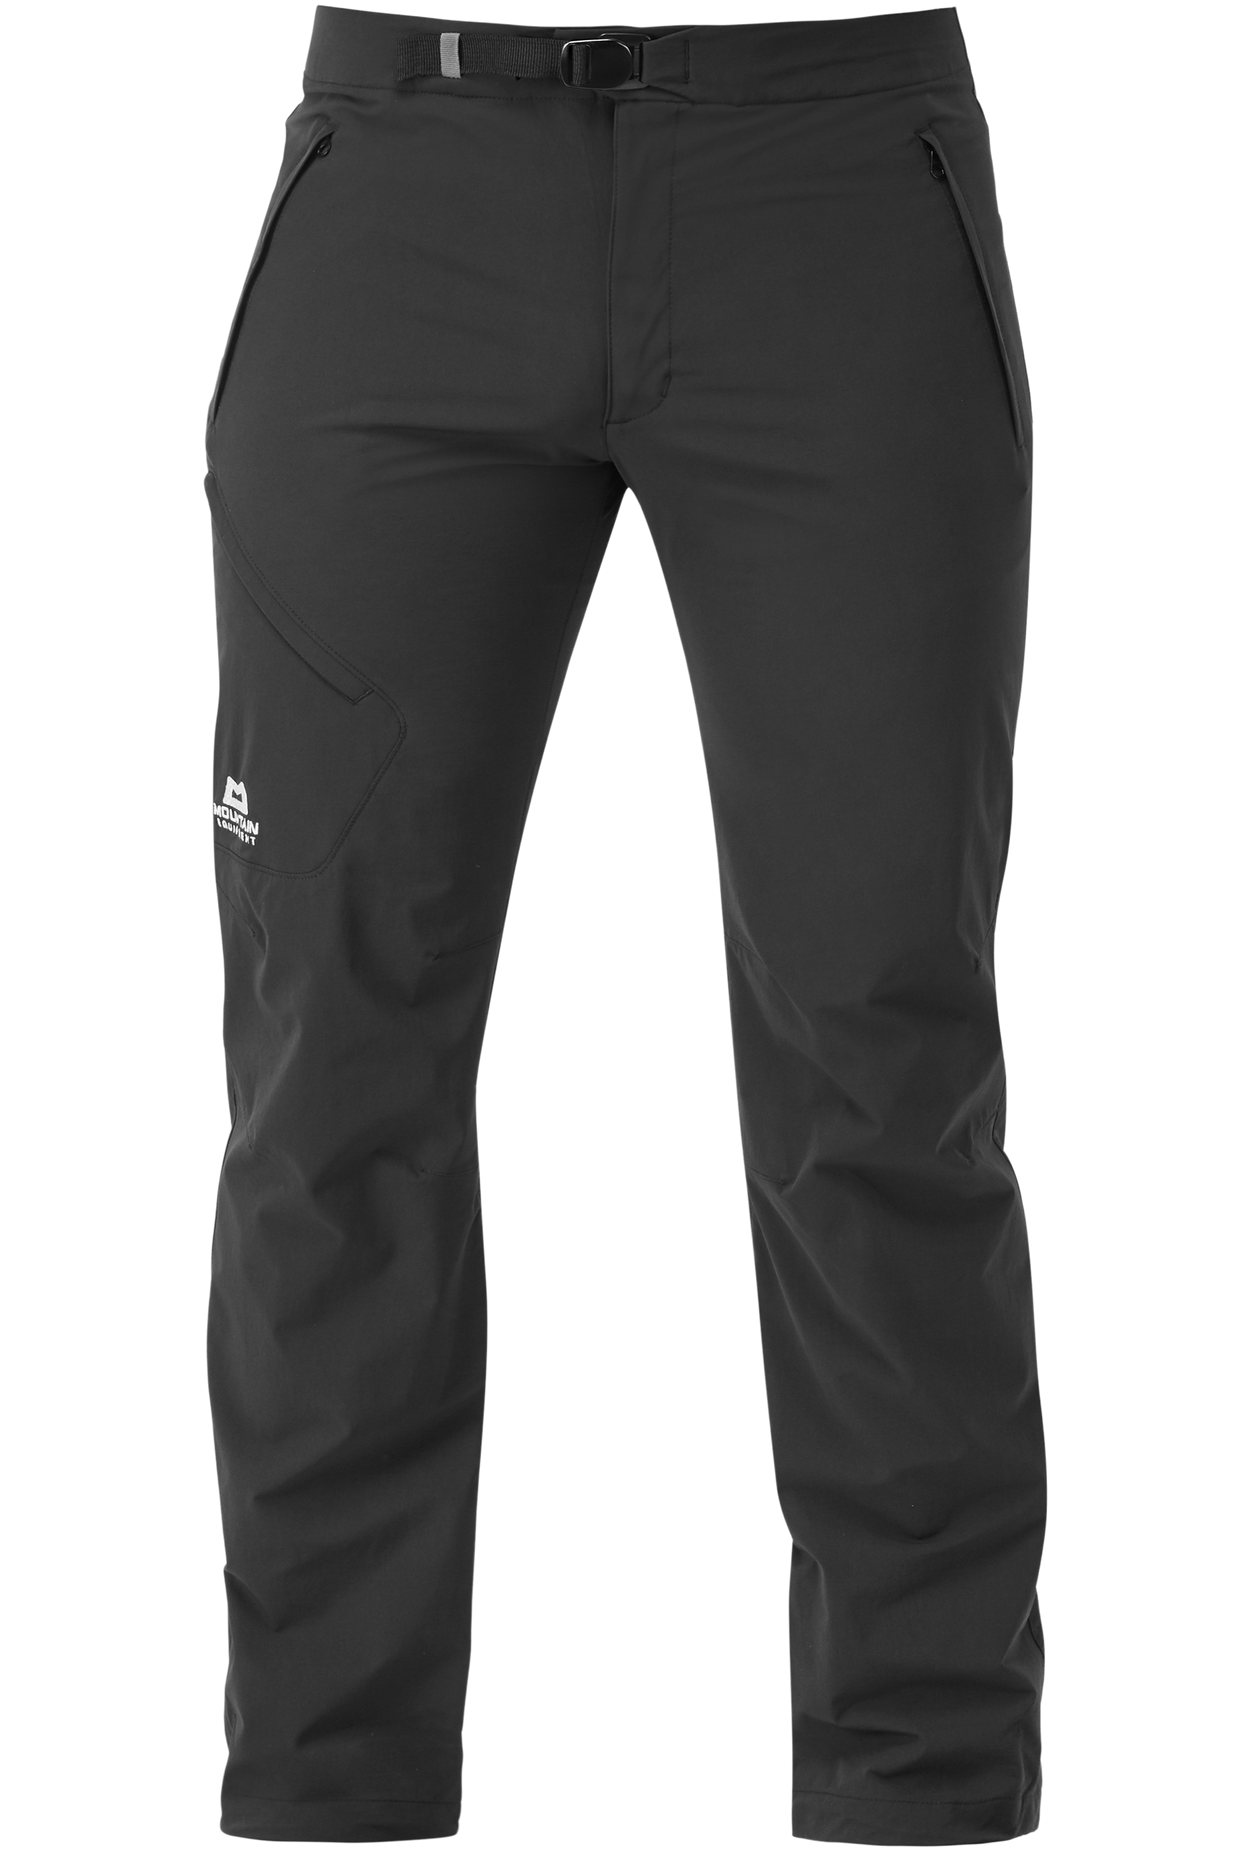 Mountain Equipment pánské softshellové kalhoty Comici Pant - zkrácené Barva: black/black, Velikost: 28/XS